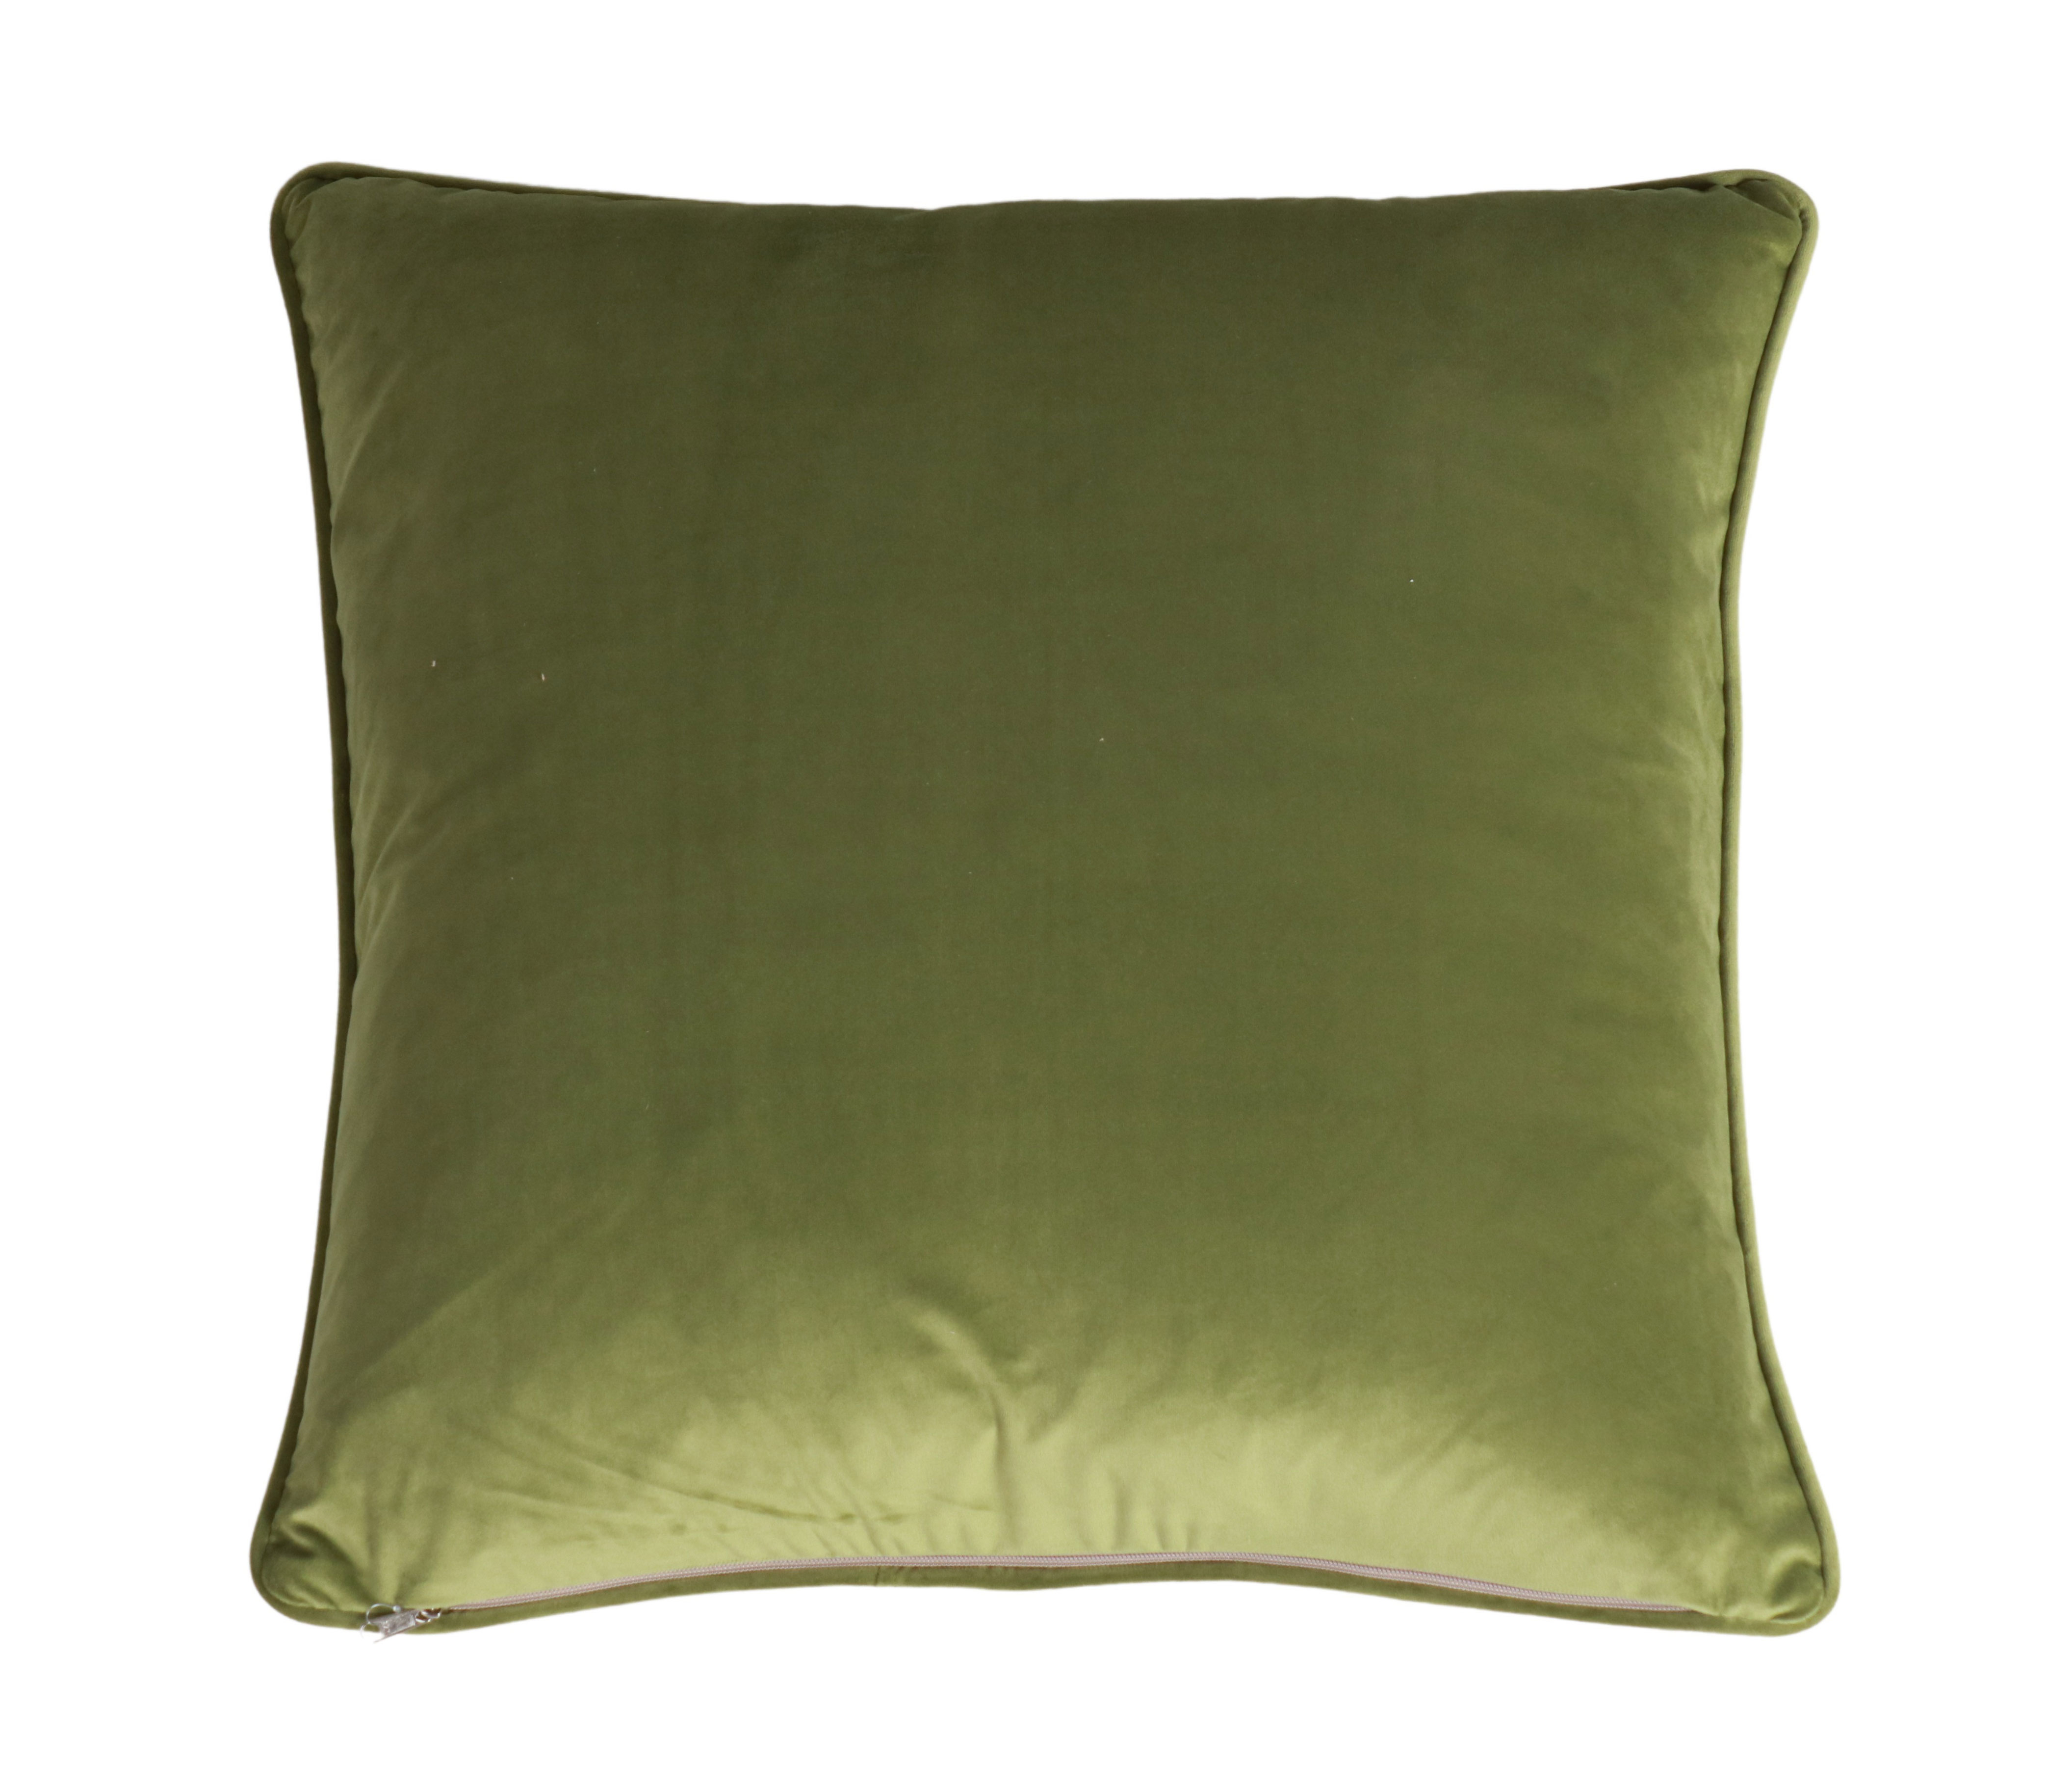 flower print cushion with green velvet backing 